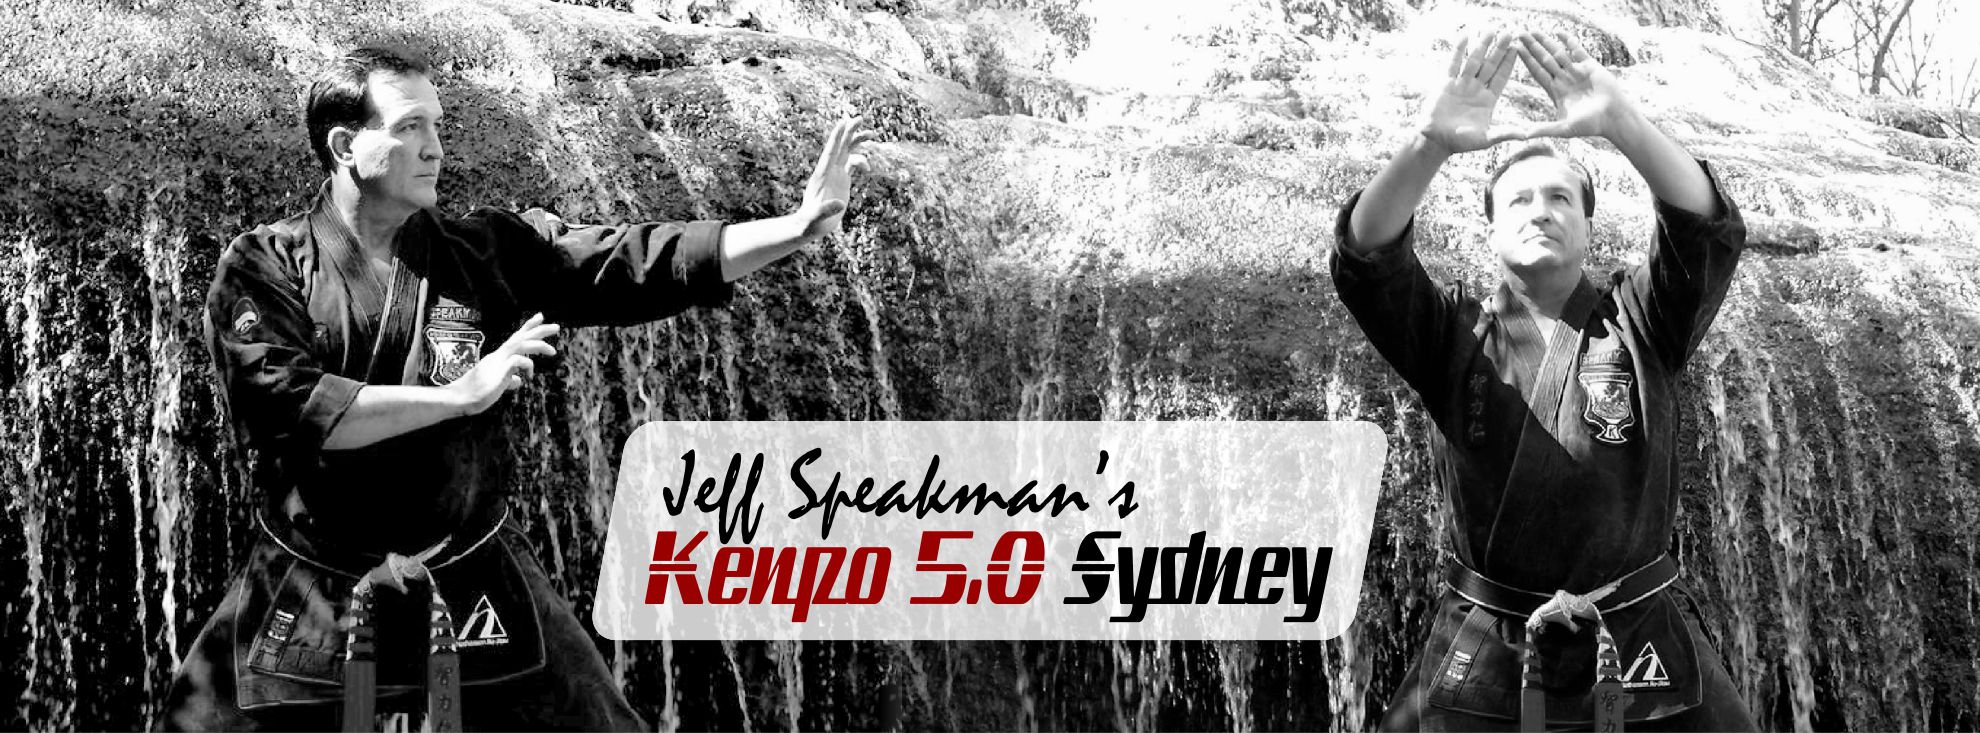 Jeff Speakman Kenpo Sydney